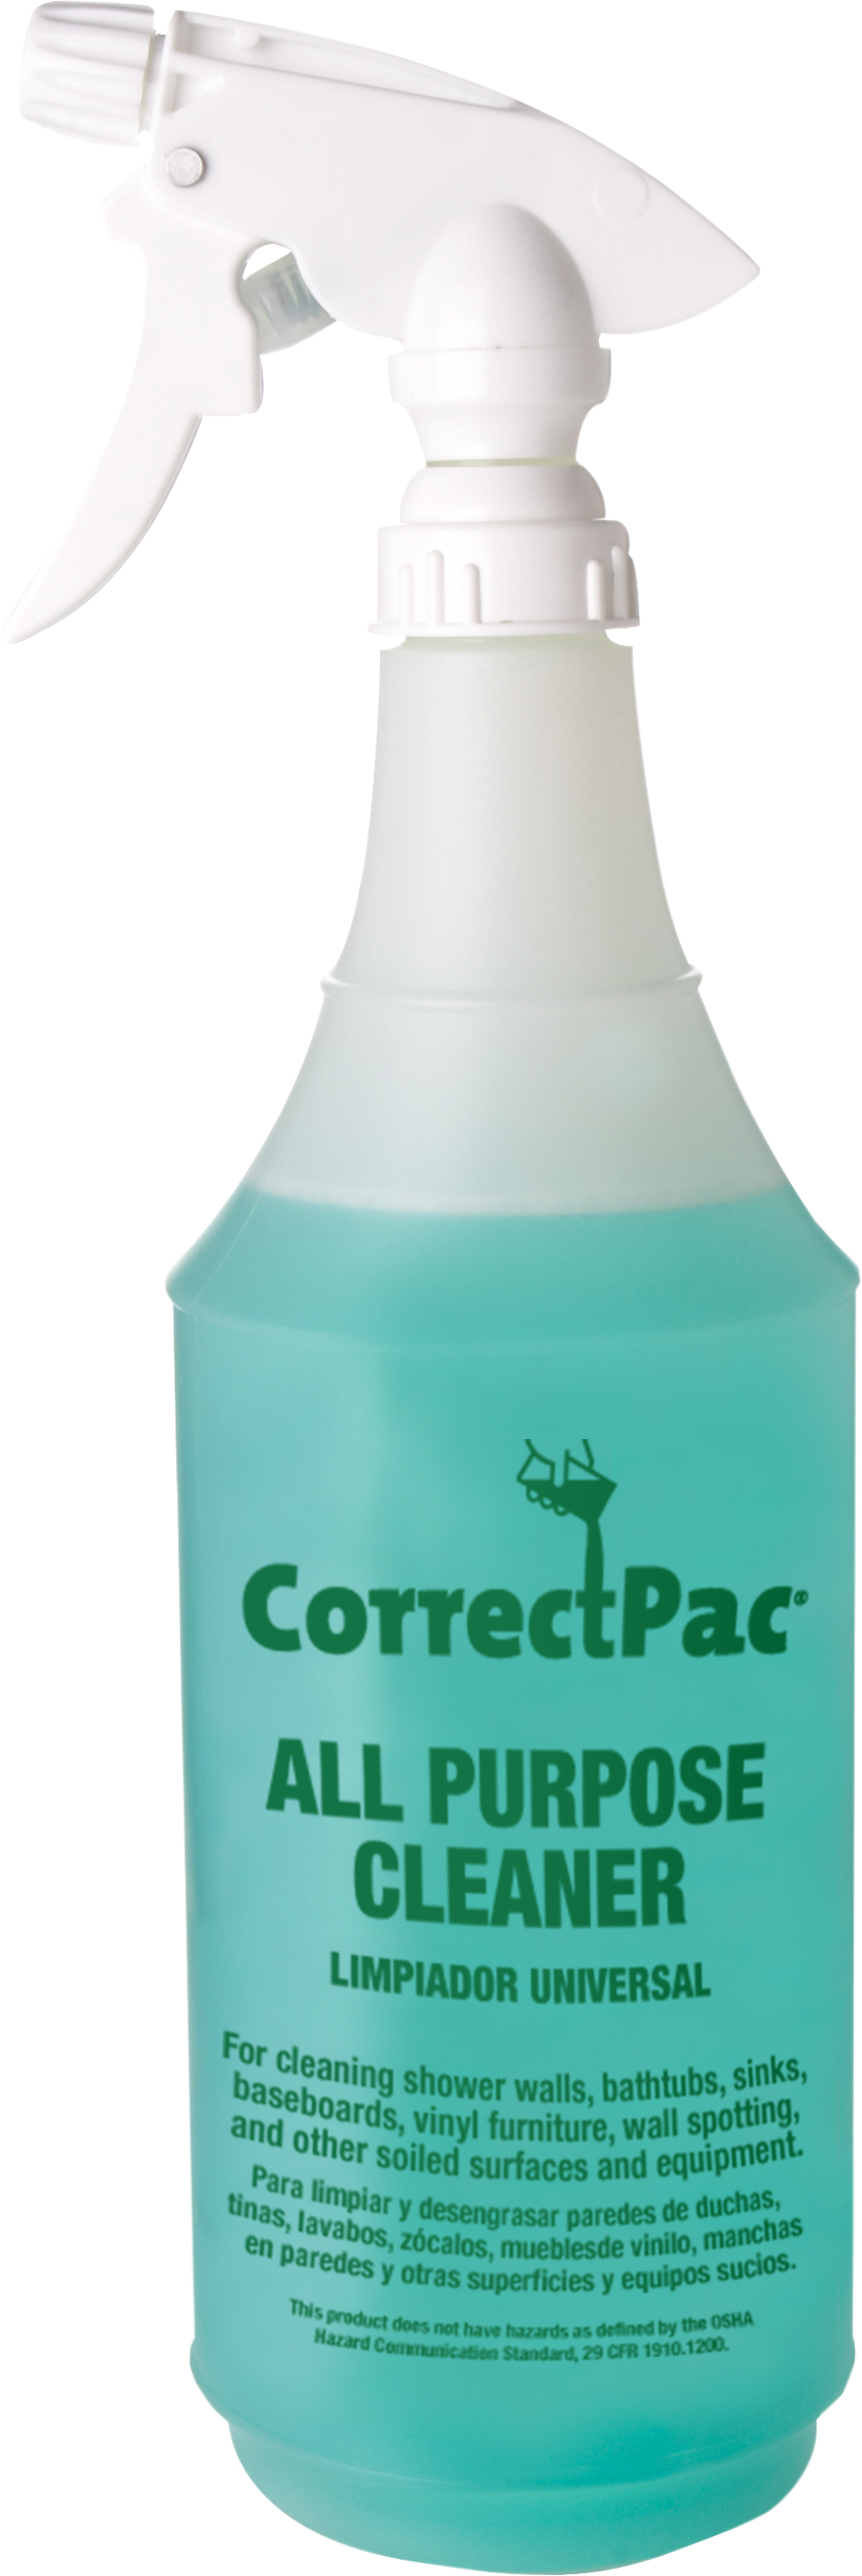 Spray Bottle for Heavy Duty Cleaner